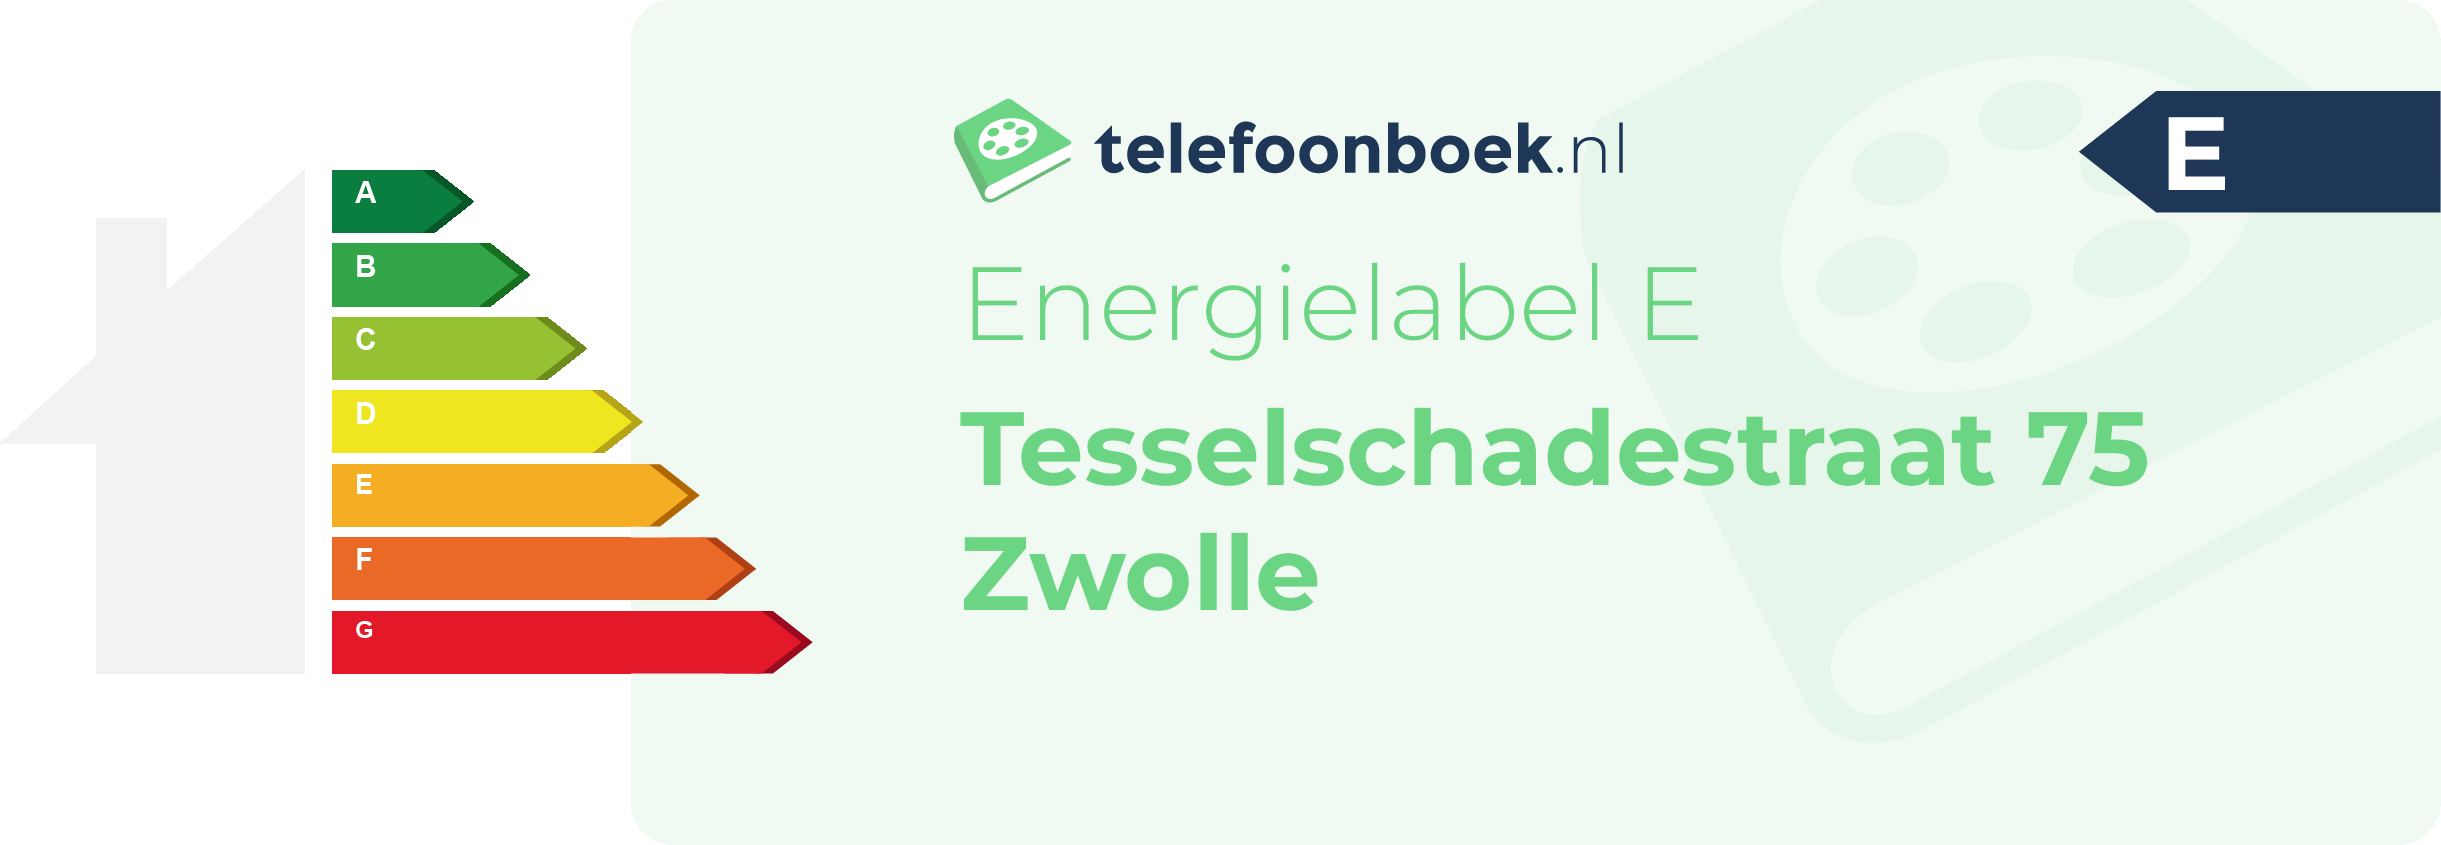 Energielabel Tesselschadestraat 75 Zwolle